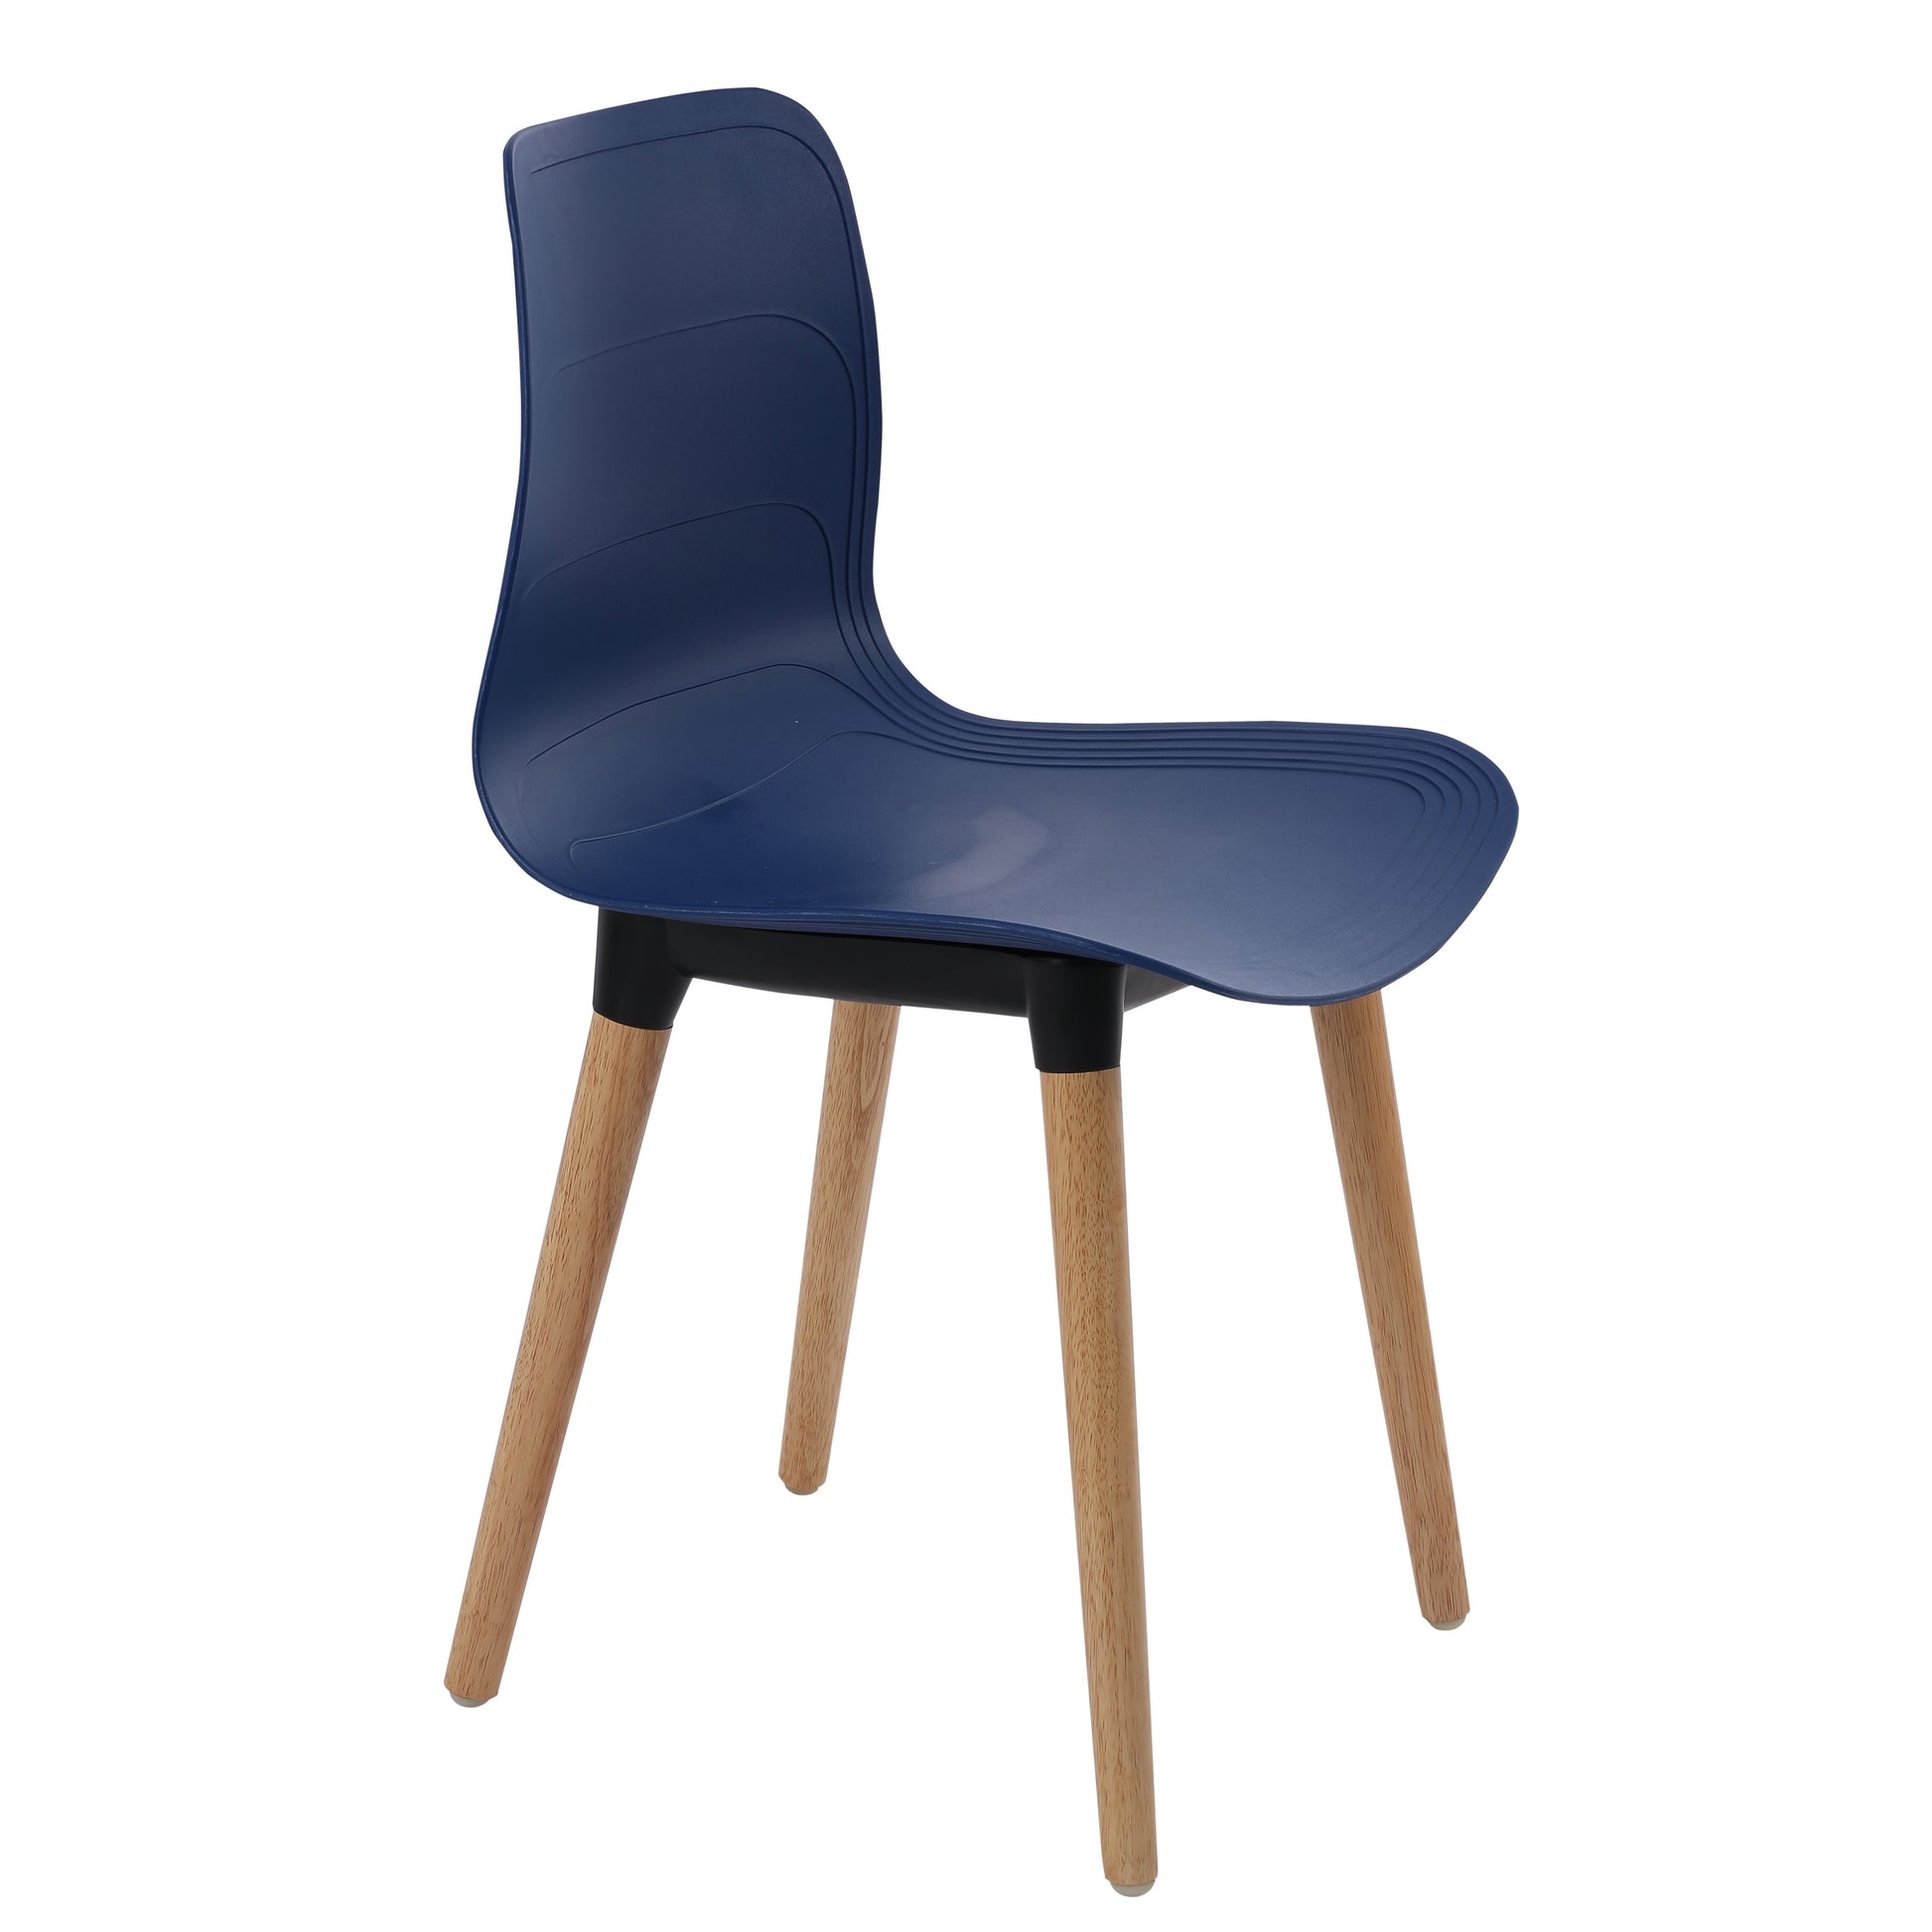 Ghế nhựa chân gỗ - HIFUWA - Hàng xuất khẩu - Màu xanh đen